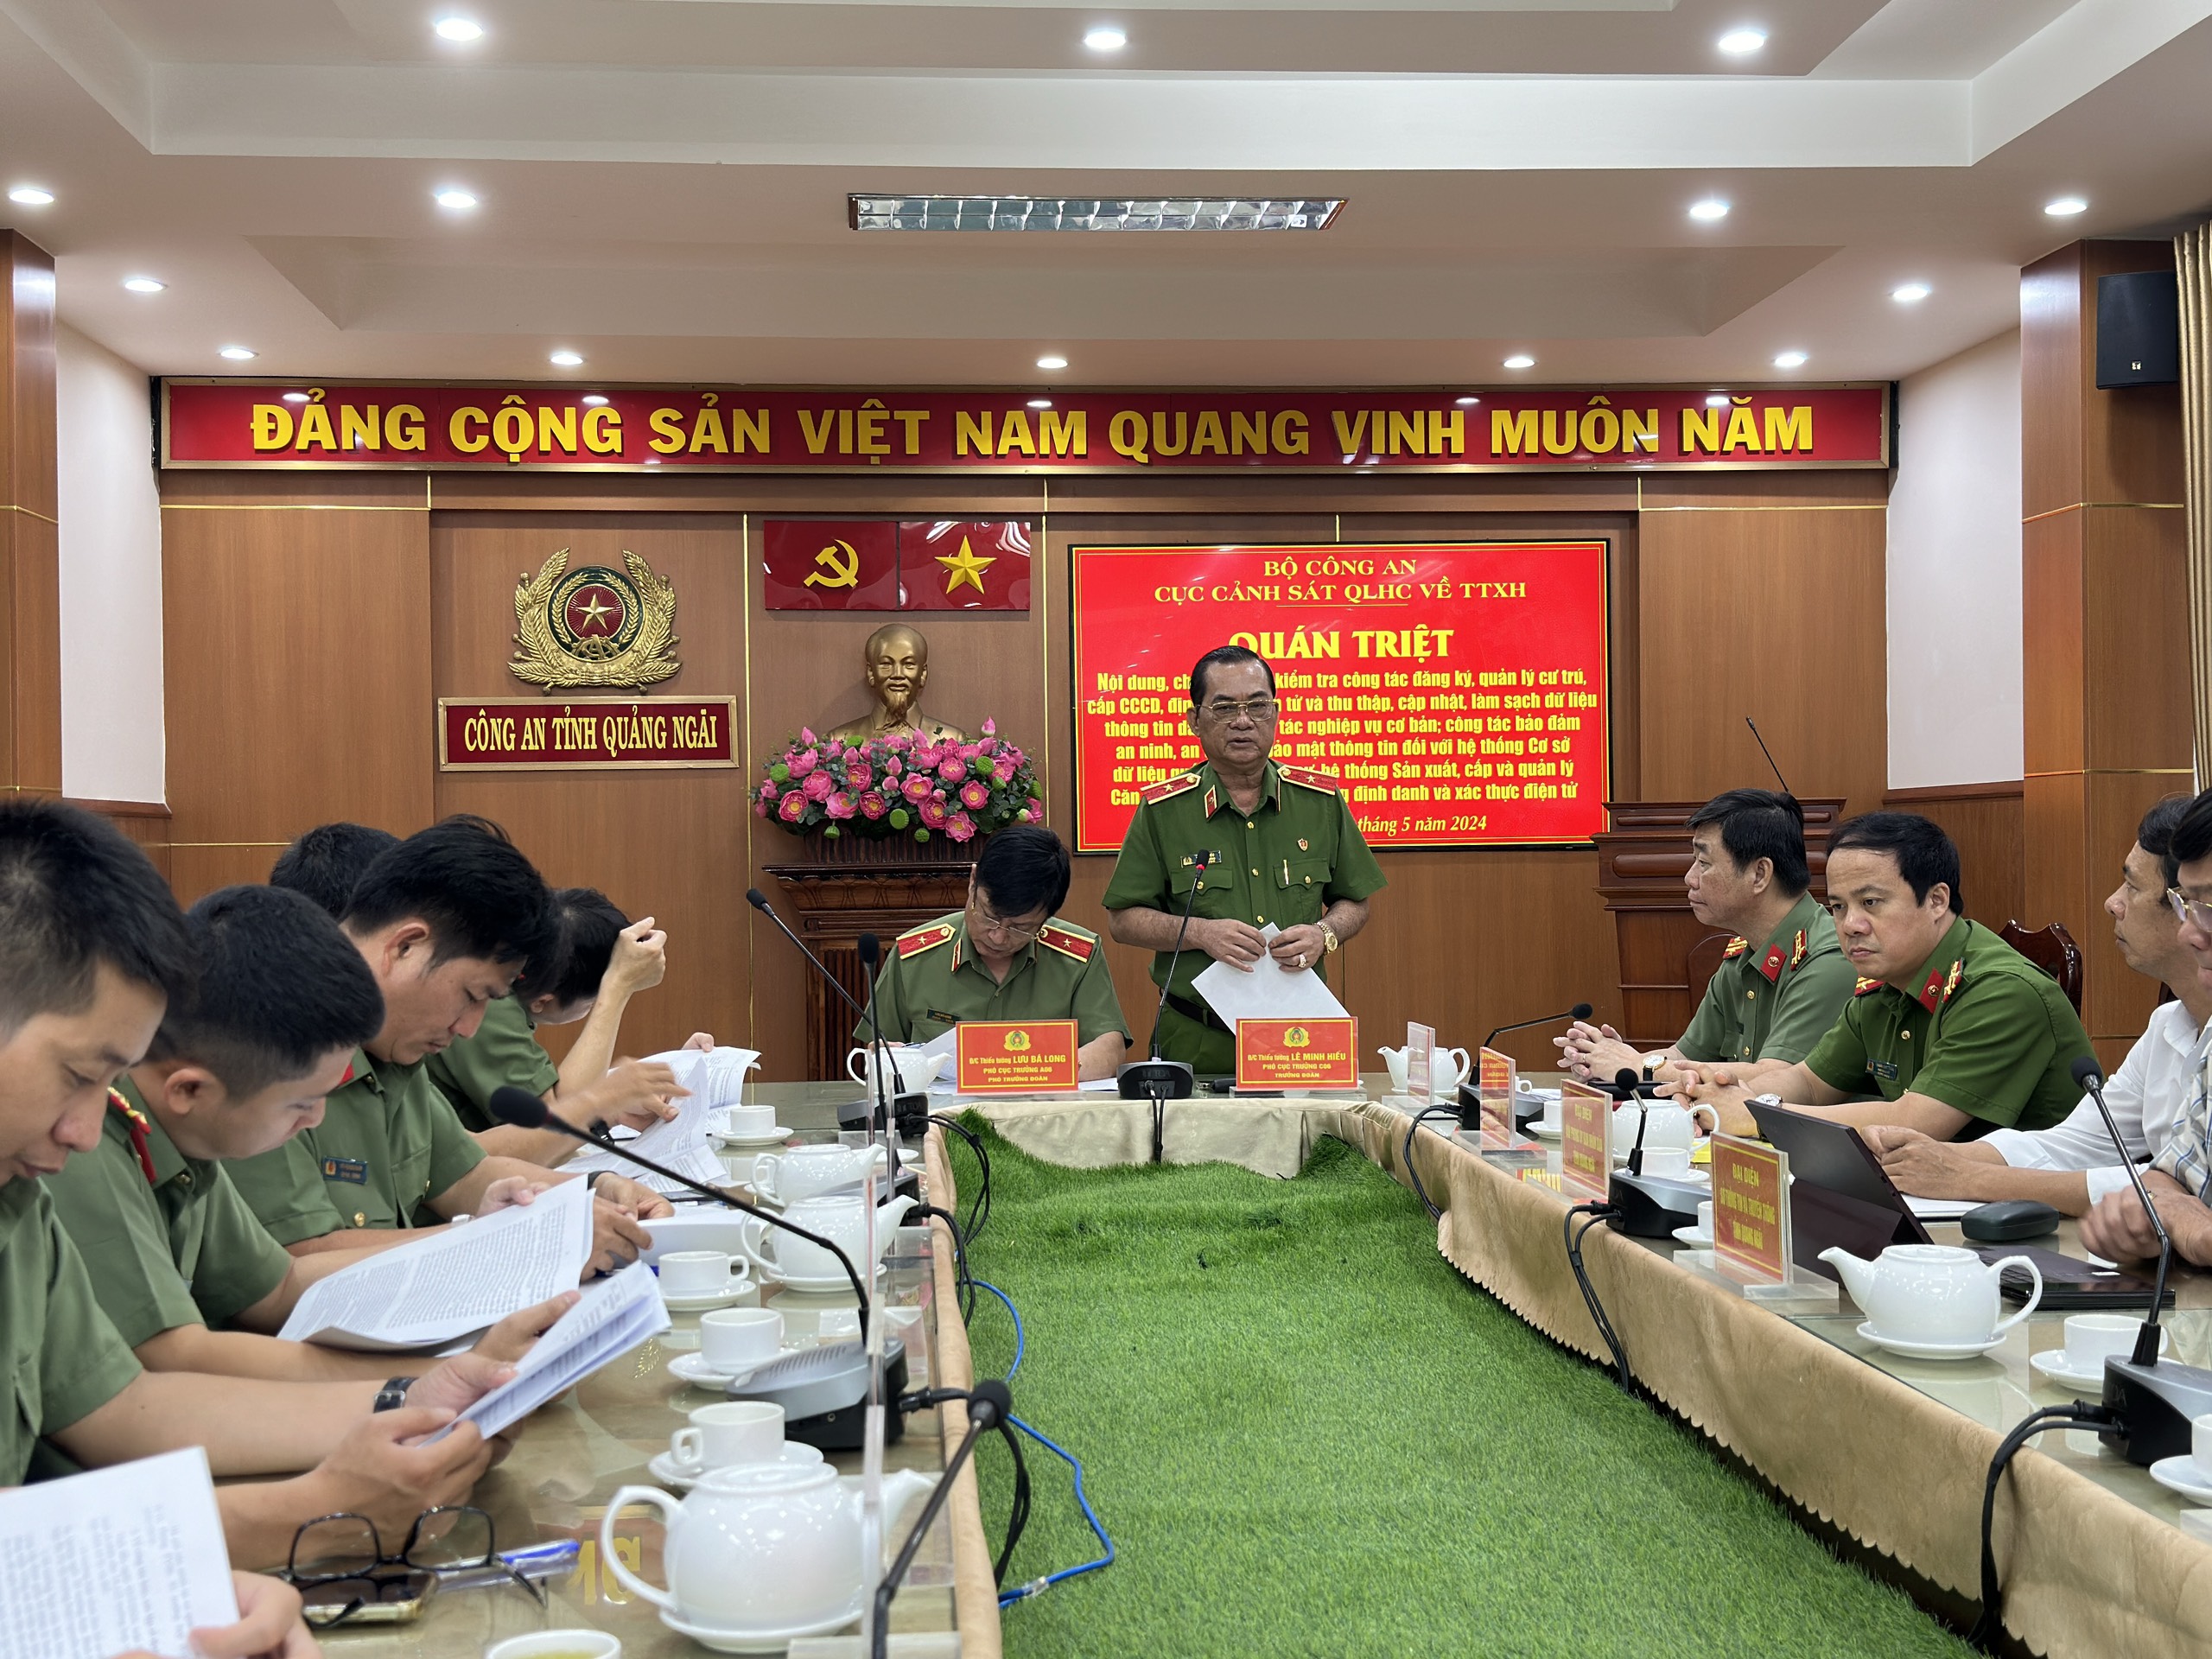 Đoàn Công tác Cục Cảnh sát QLHC về TTXH, Bộ Công an làm việc tại Công an tỉnh Quảng Ngãi